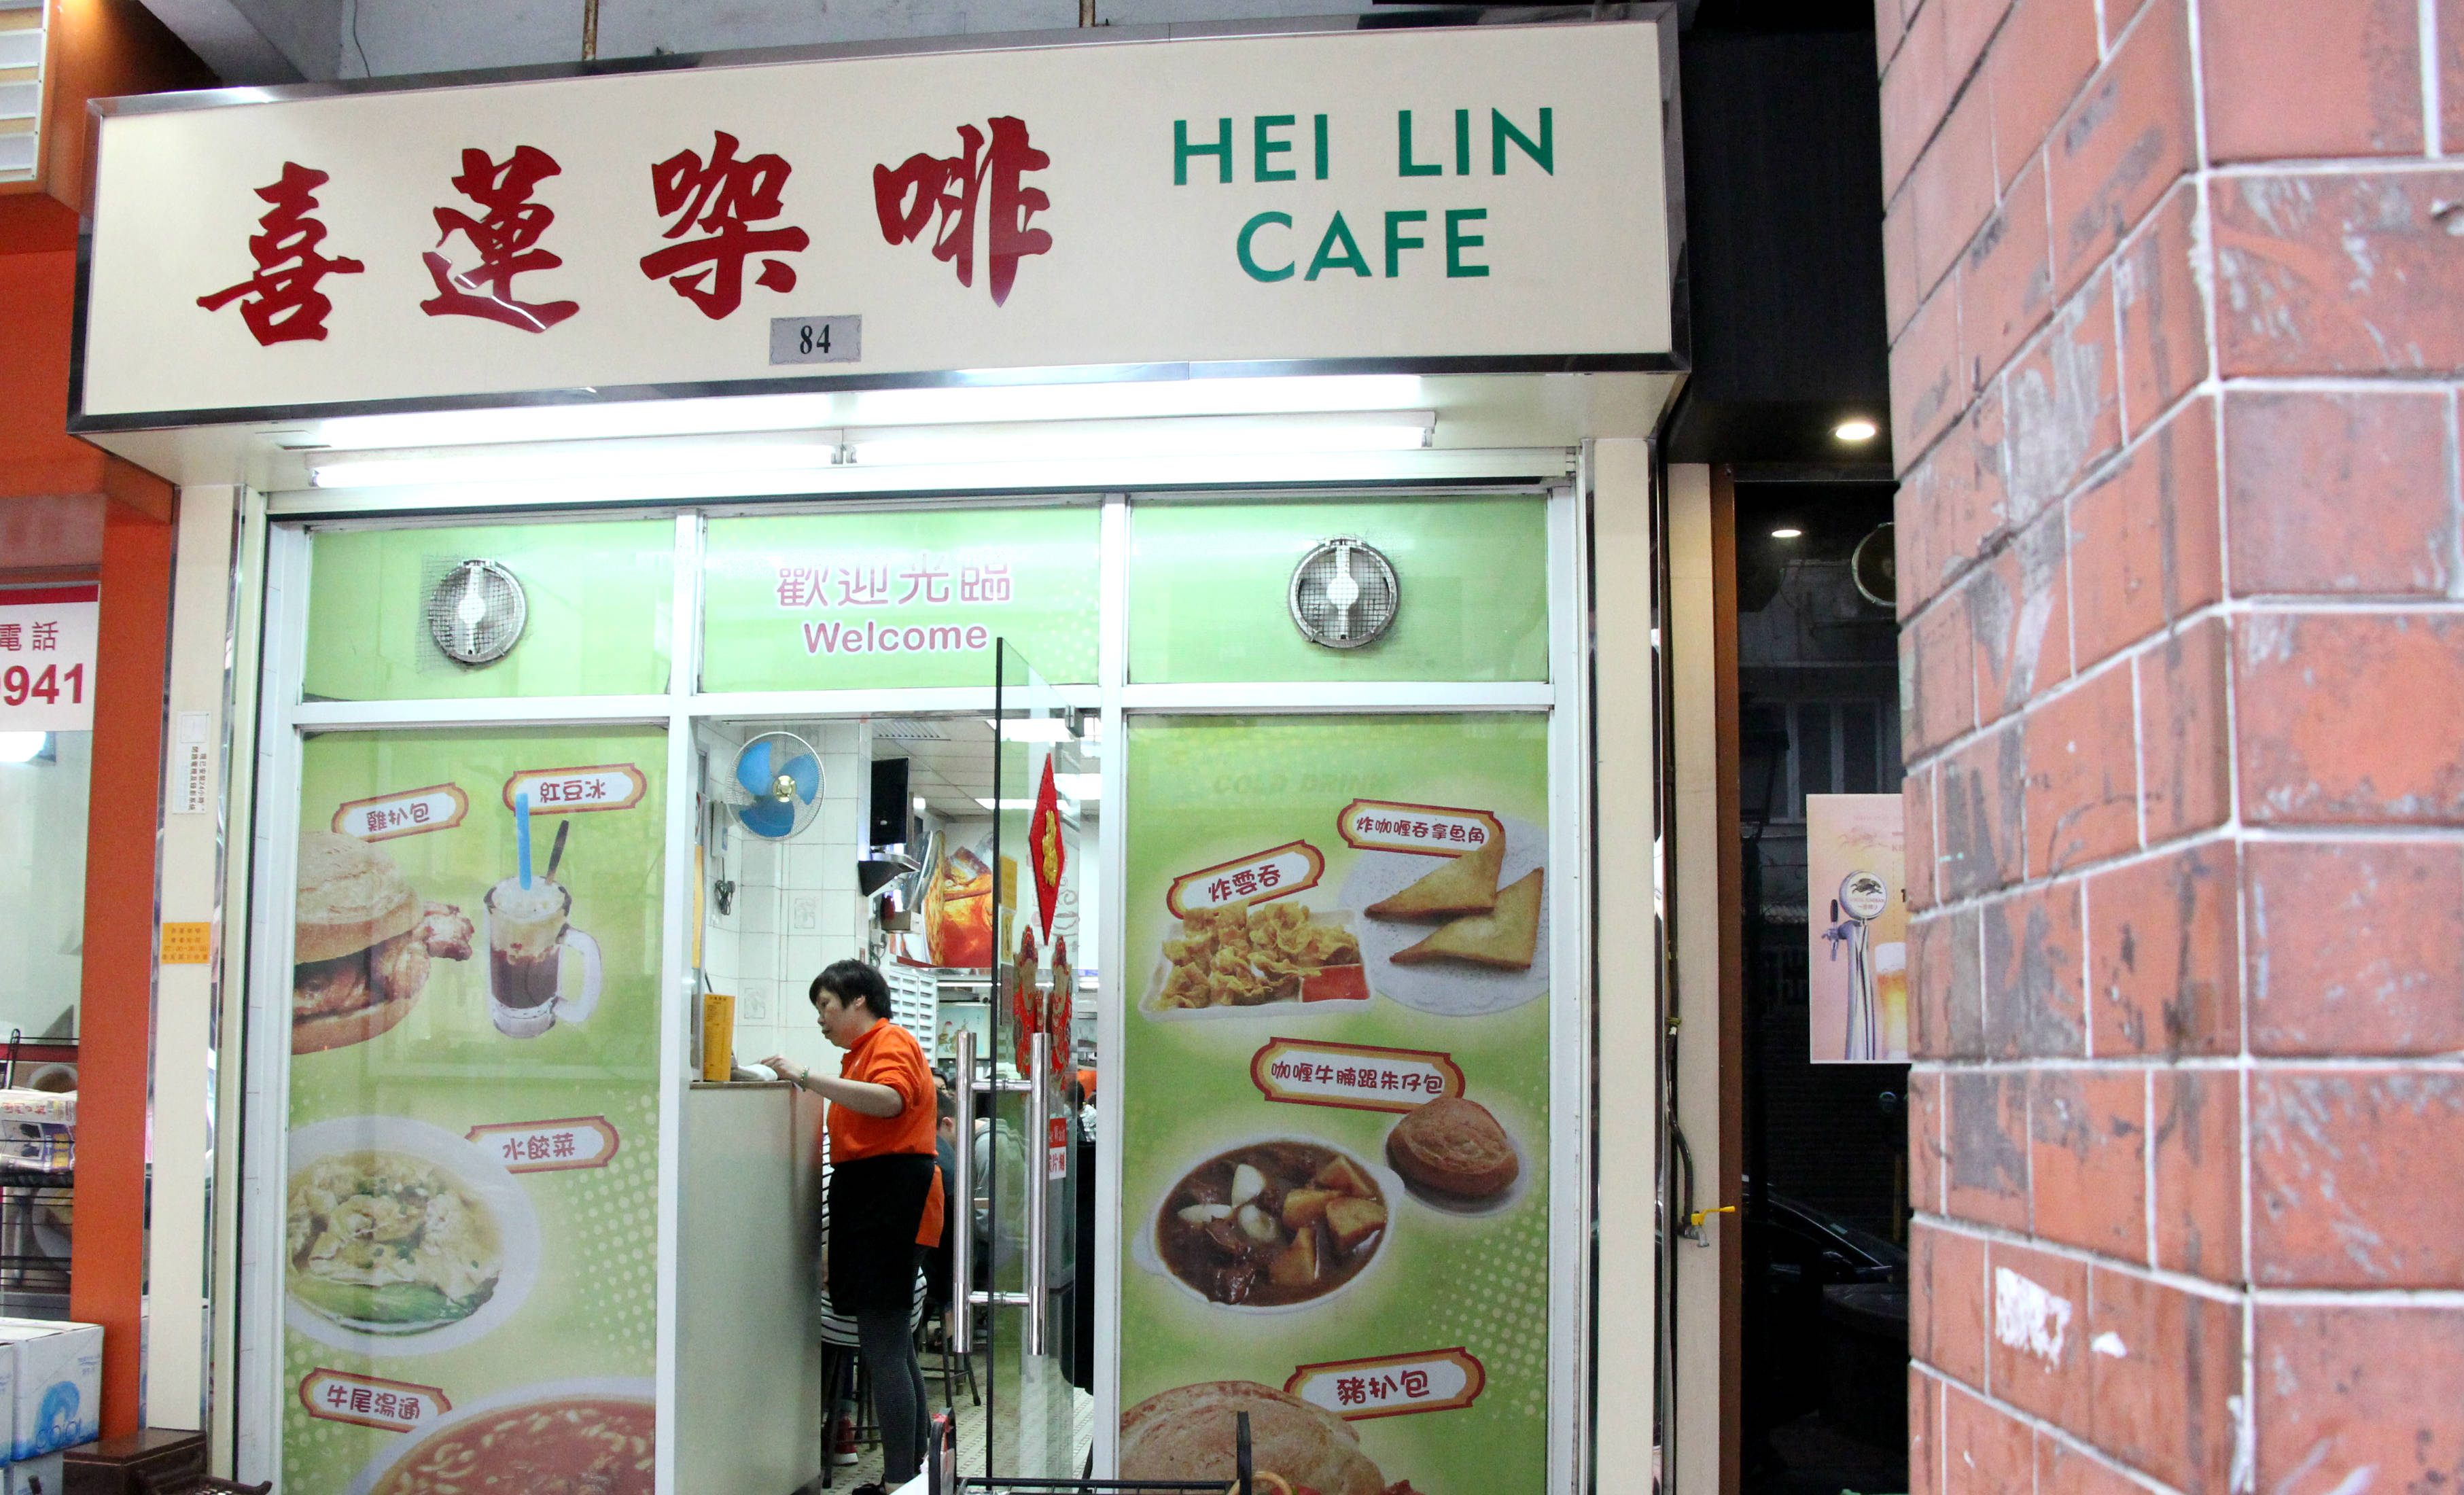 Macau, Hei Lin Cafe